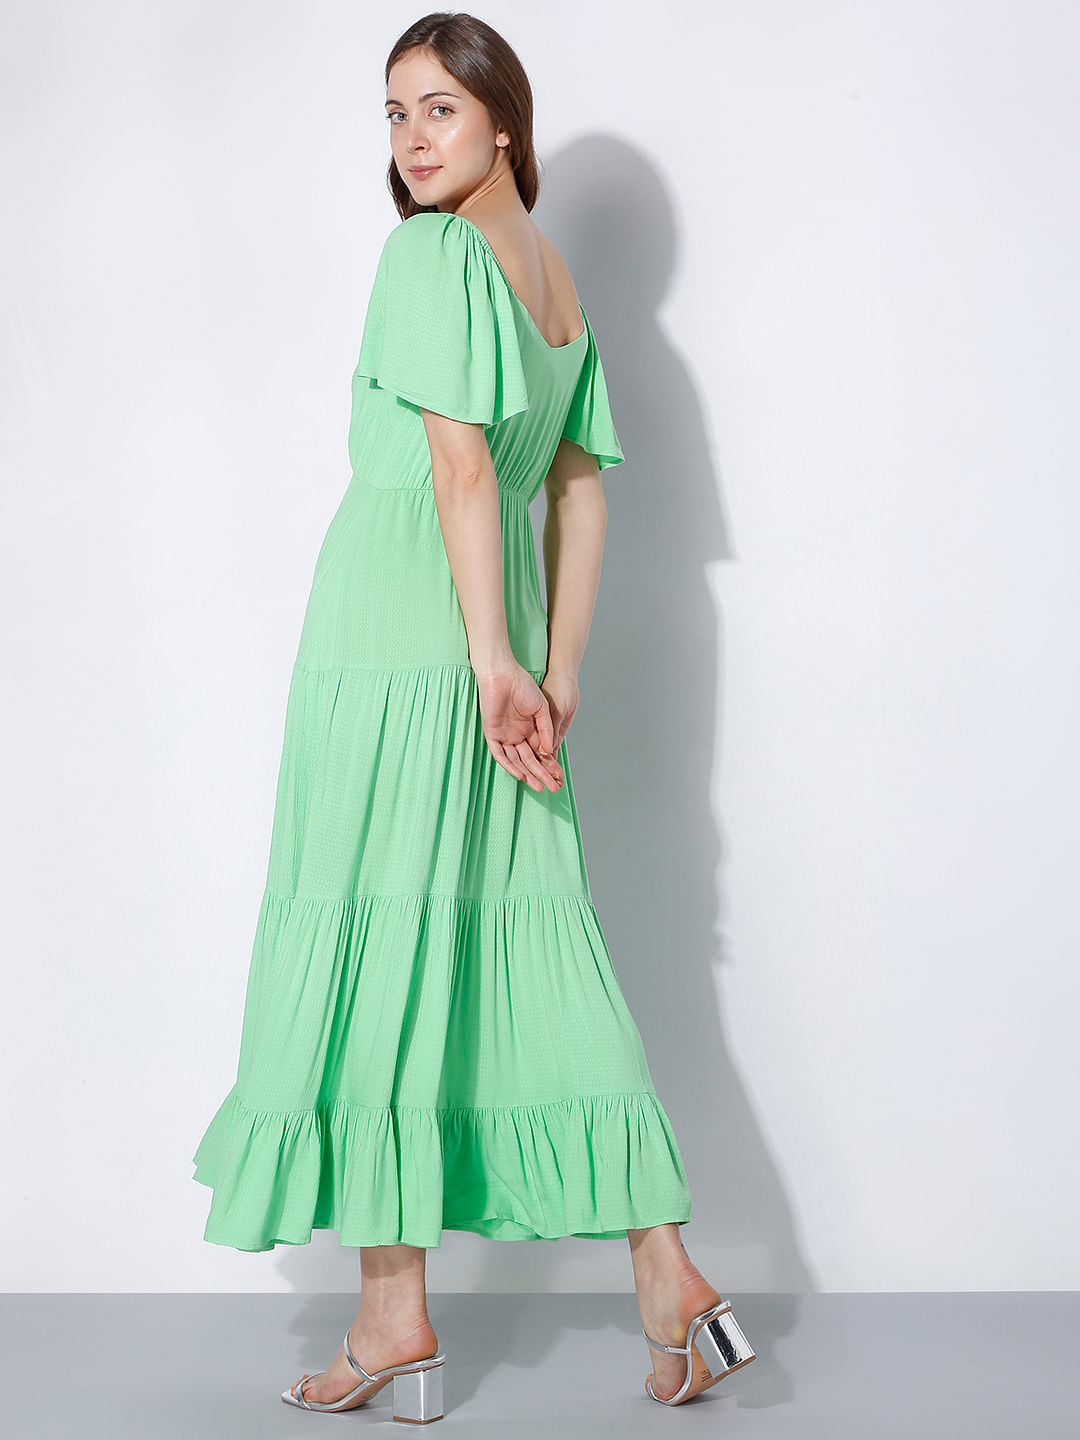 Dark Green Pleated Dress | Long green dress, Pleated dress, Dress